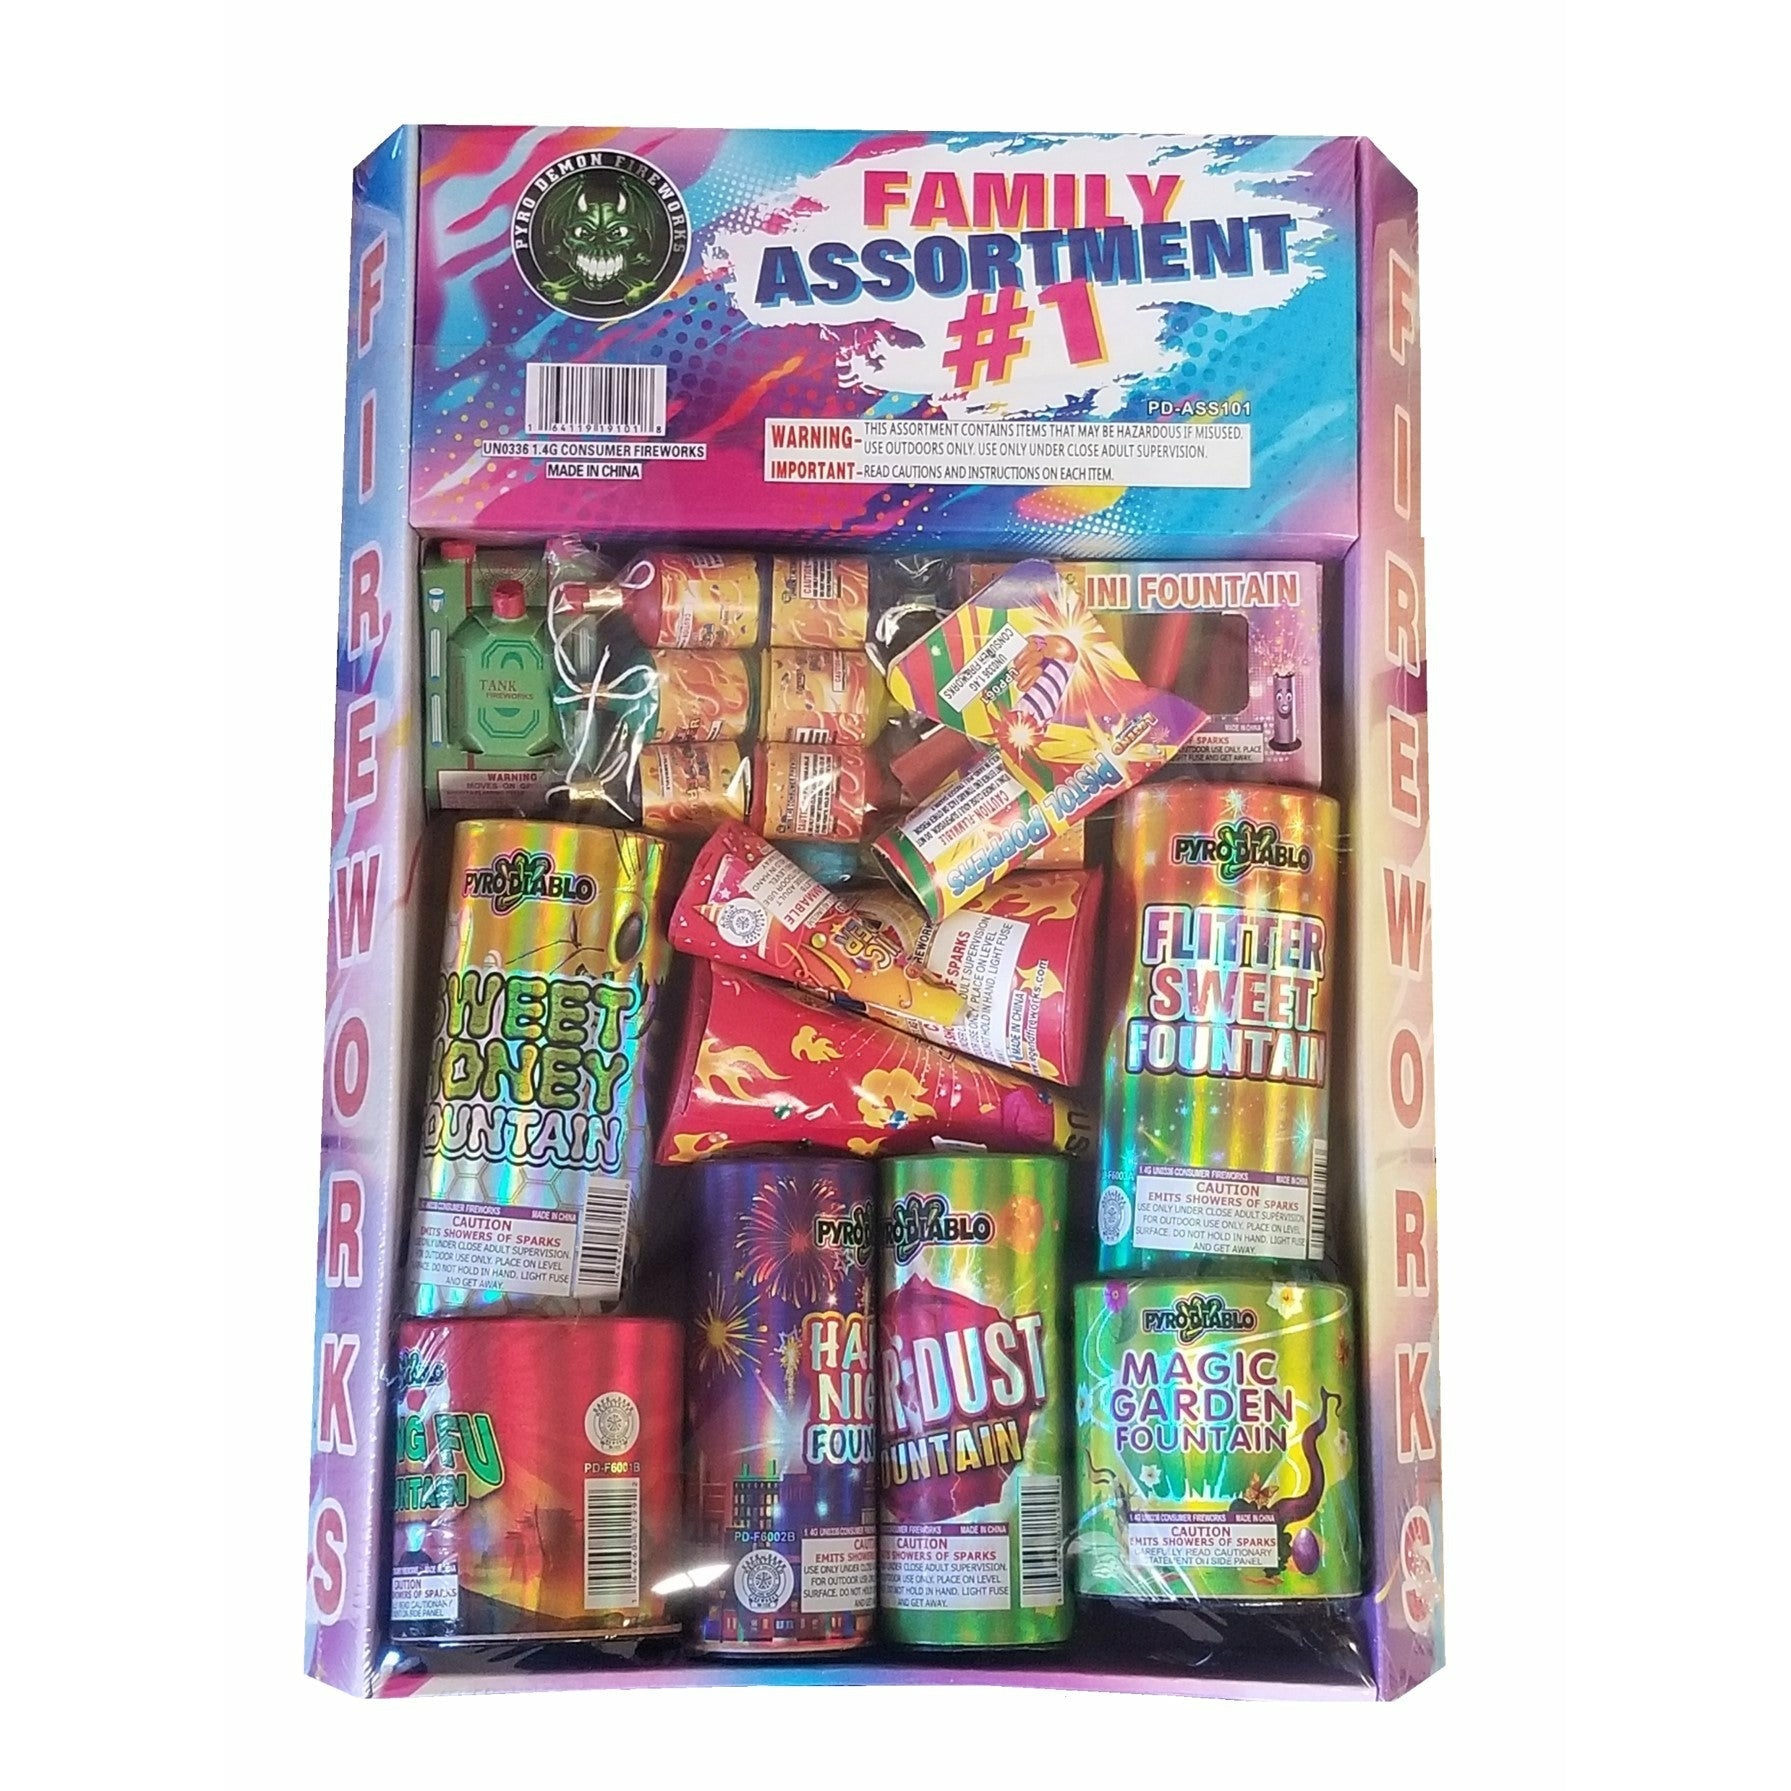 FAMILY ASSORTMENT #1 - Samurai Fireworks